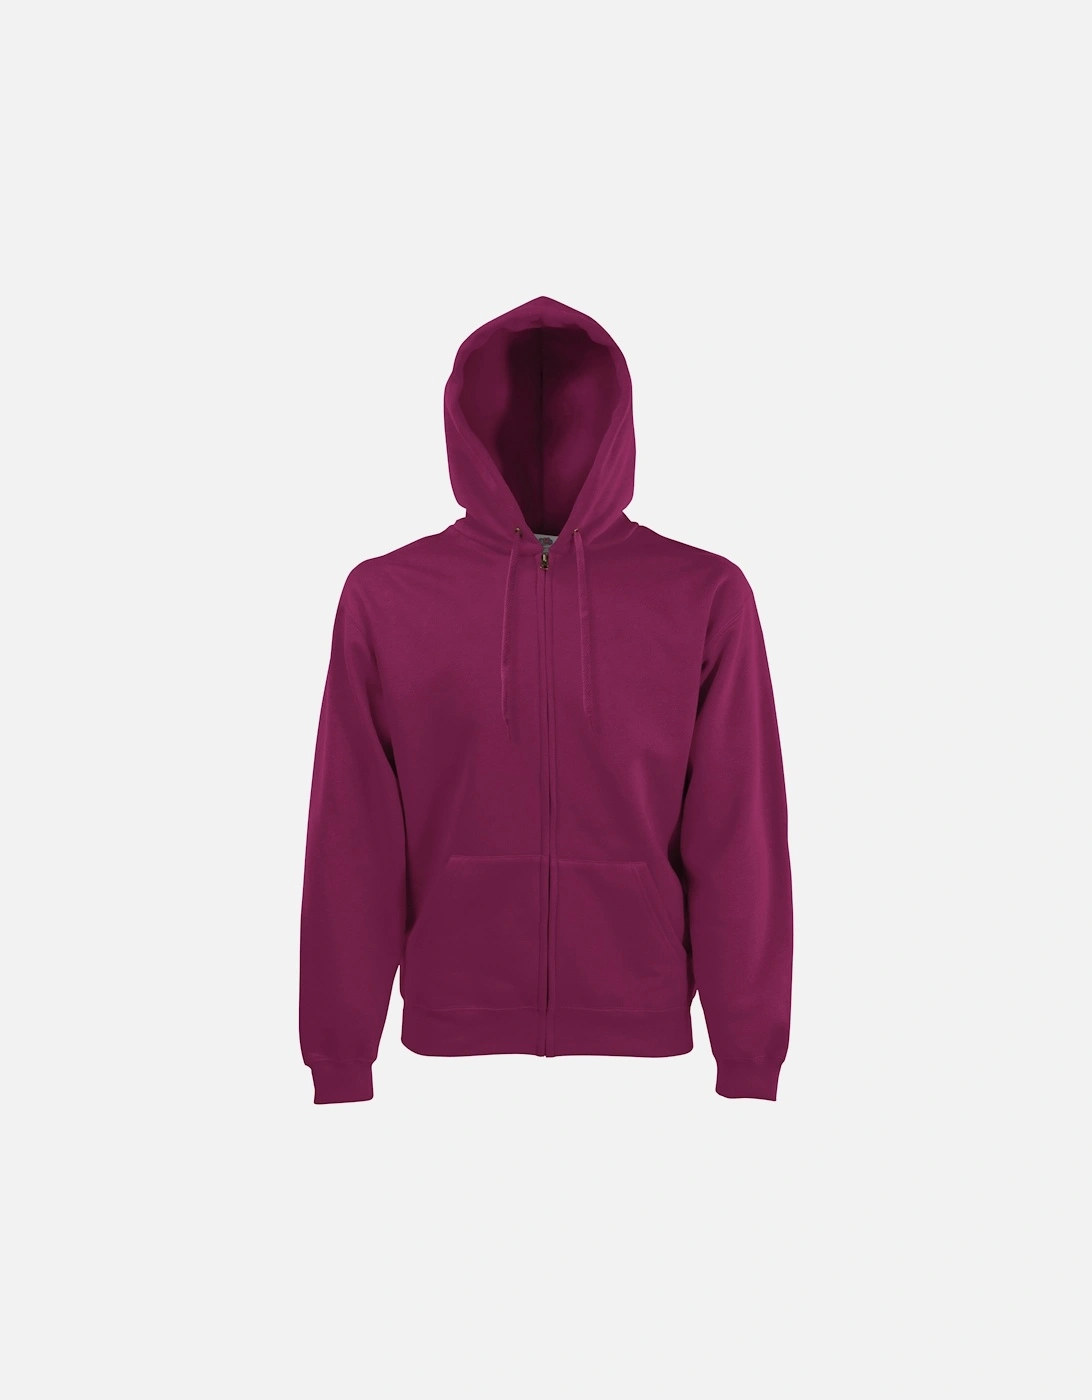 Mens Premium 70/30 Hooded Zip-Up Sweatshirt / Hoodie, 4 of 3